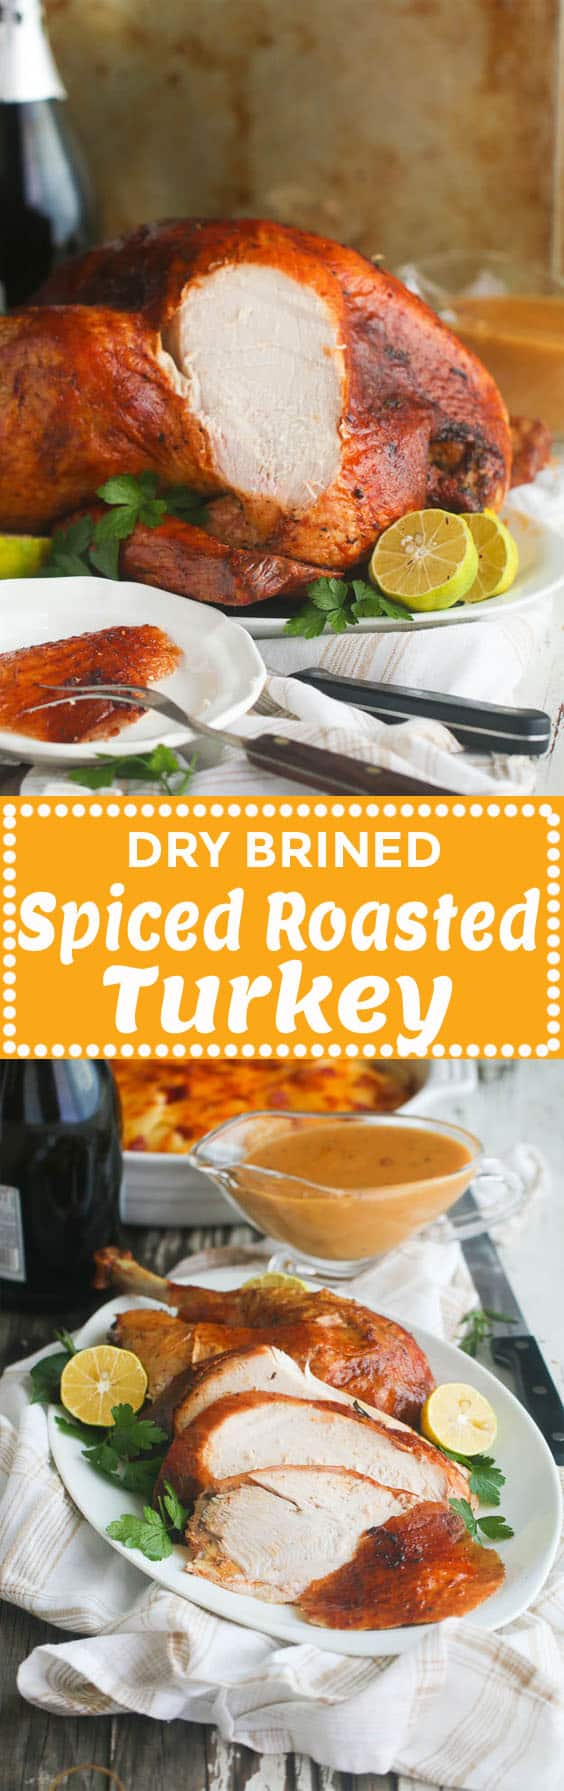 Spiced Roasted Turkey